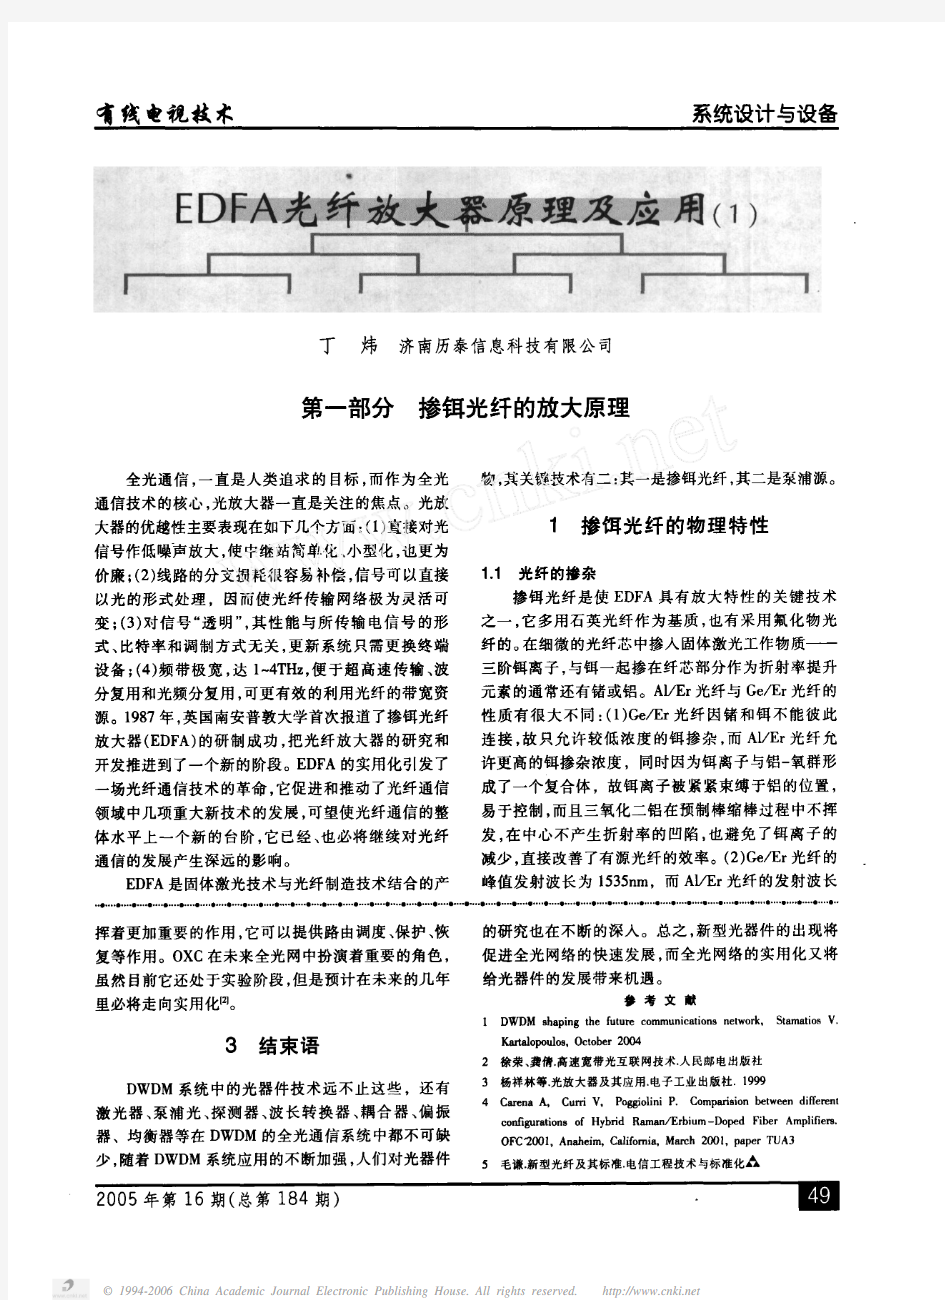 edfa光纤放大器原理及应用(1)